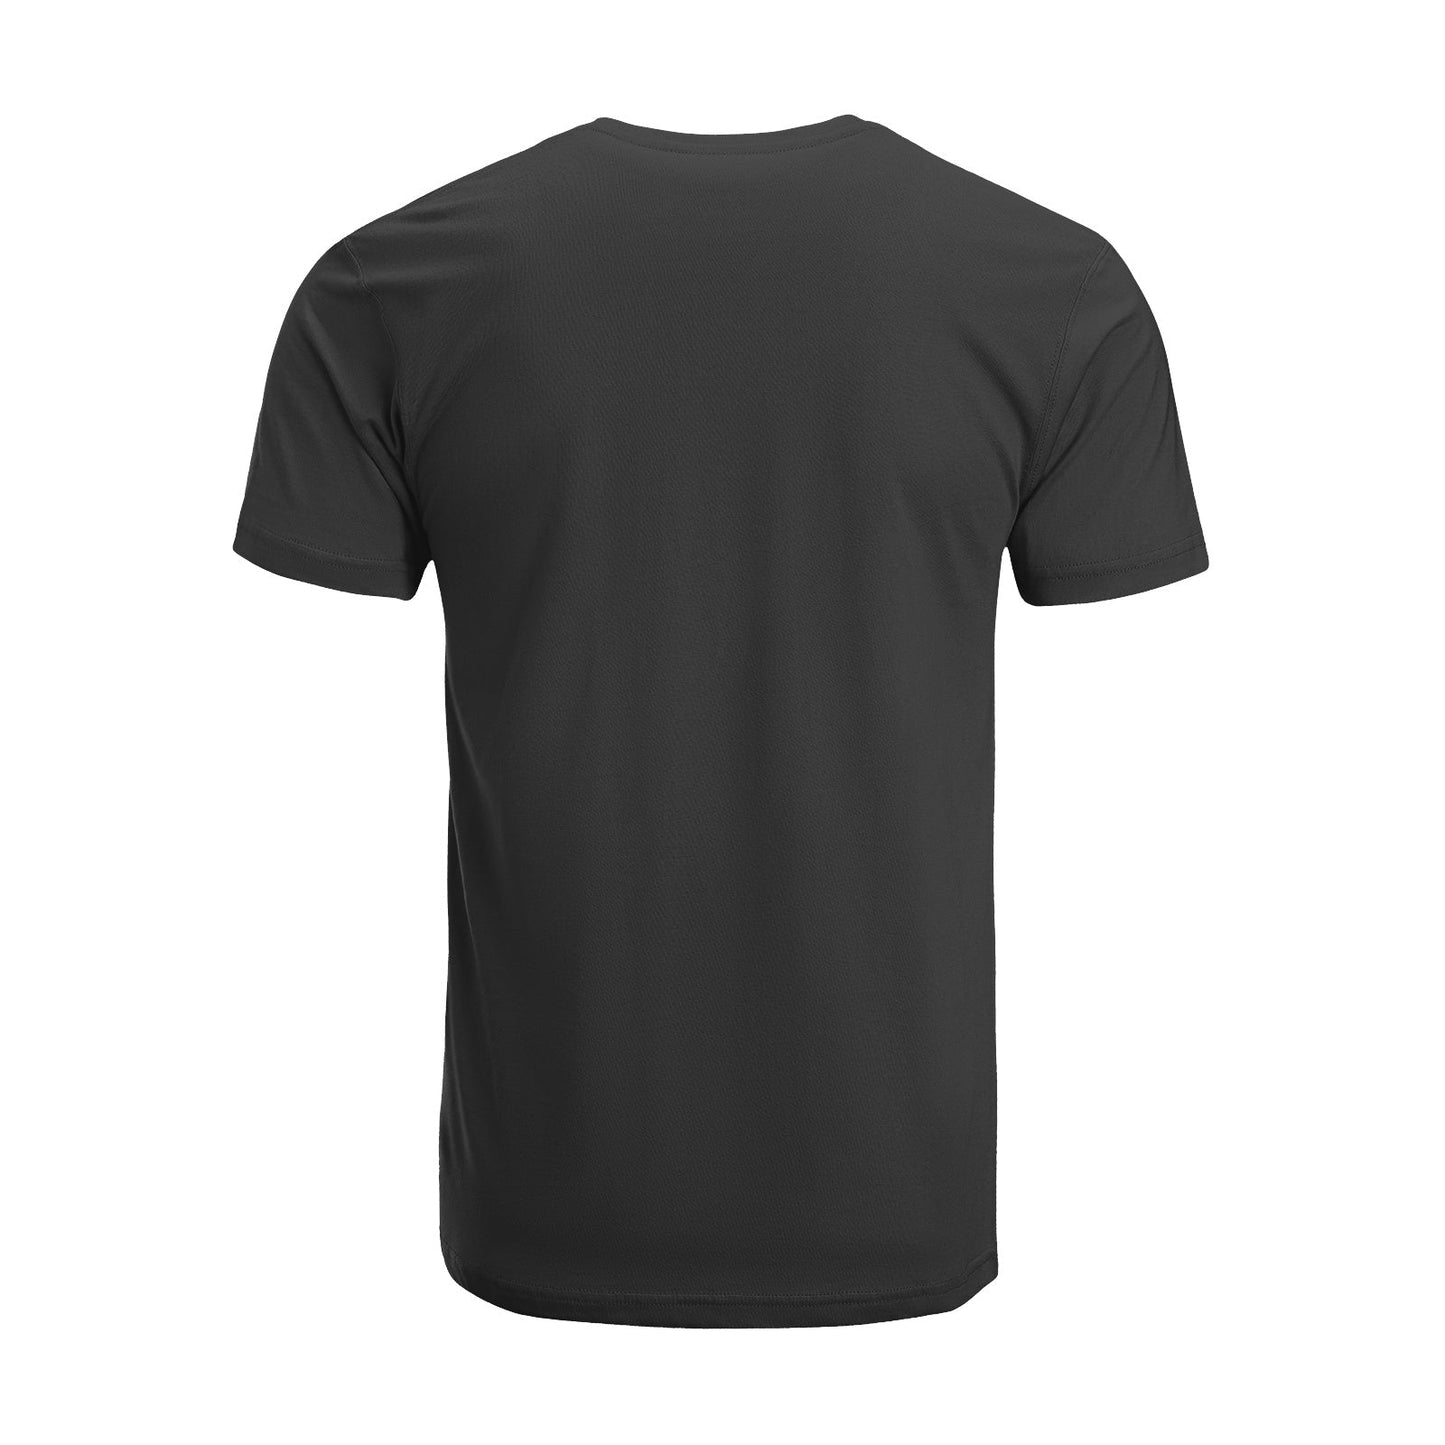 Unisex Short Sleeve Crew Neck Cotton Jersey T-Shirt TRUCK 13